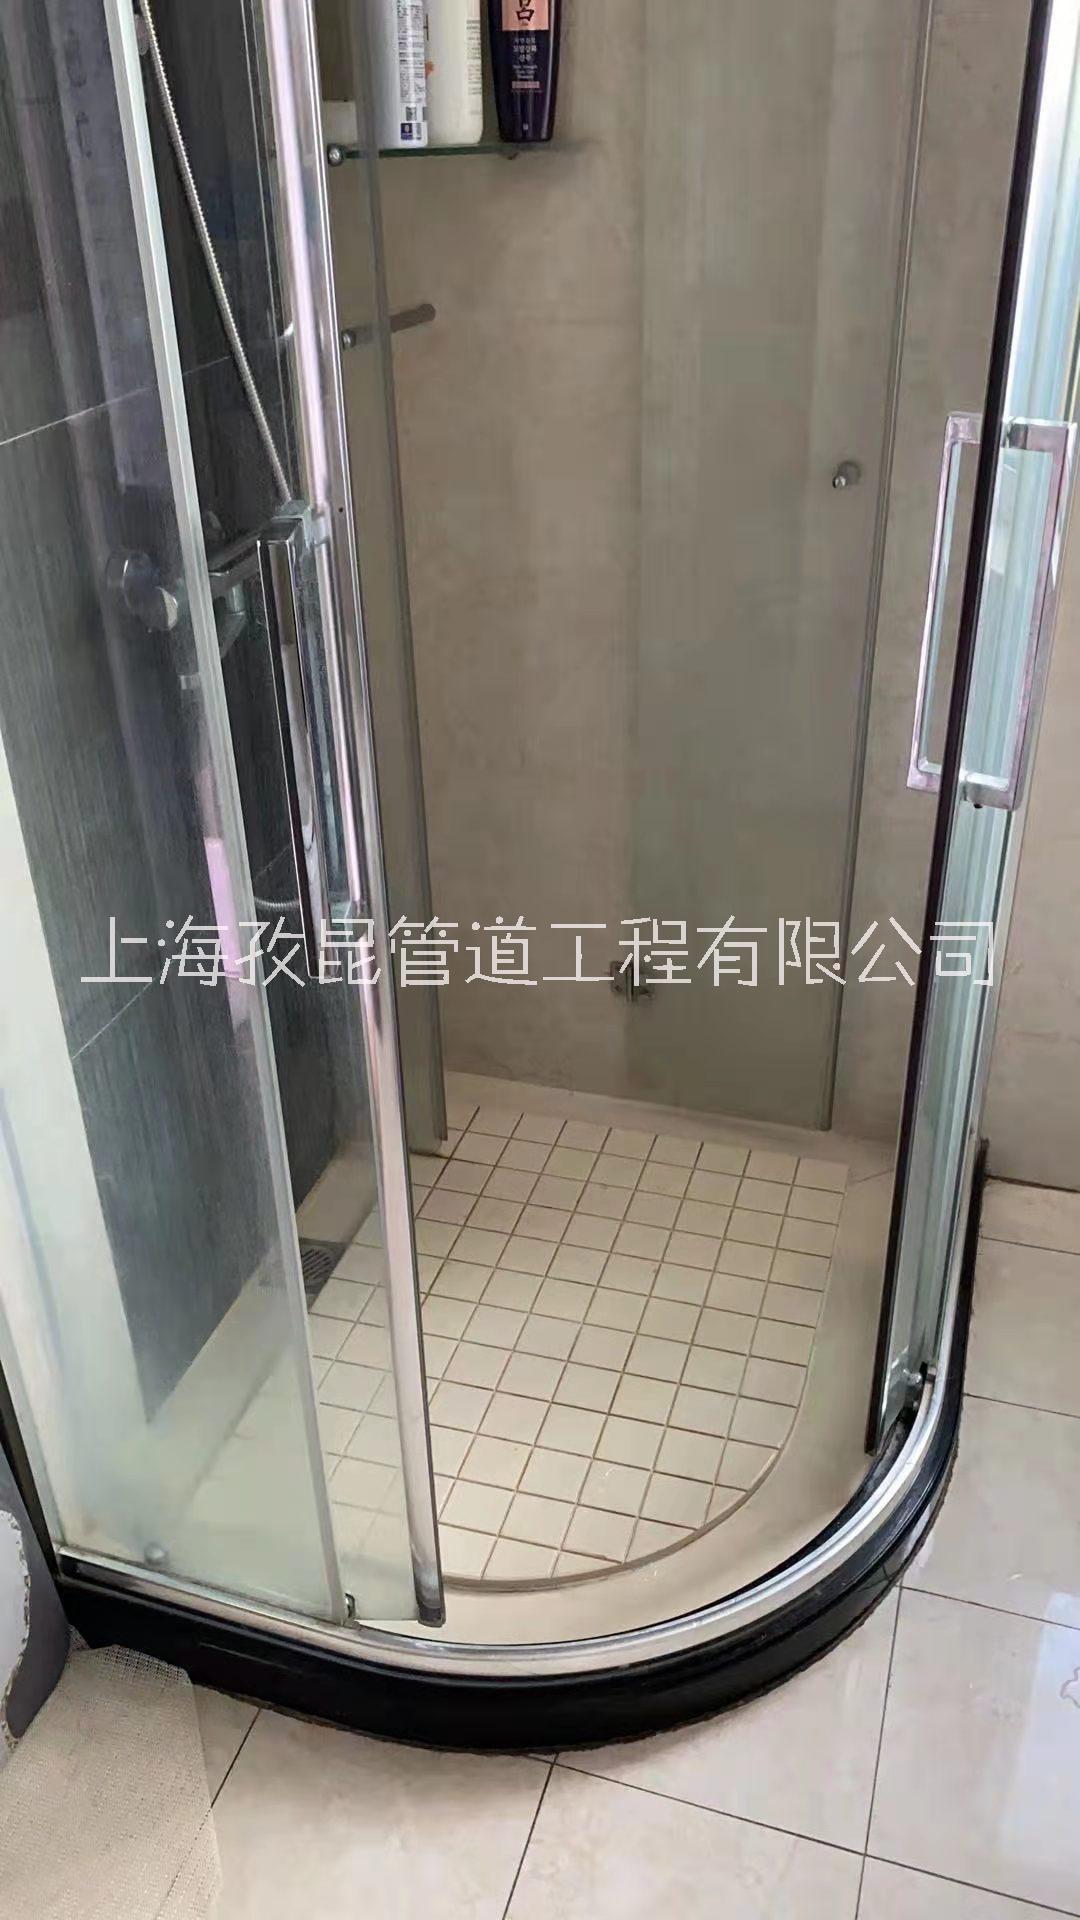 上海黄浦区漏水淋浴房维修 朗斯淋浴房维修 淋浴房移门滑轮维修图片